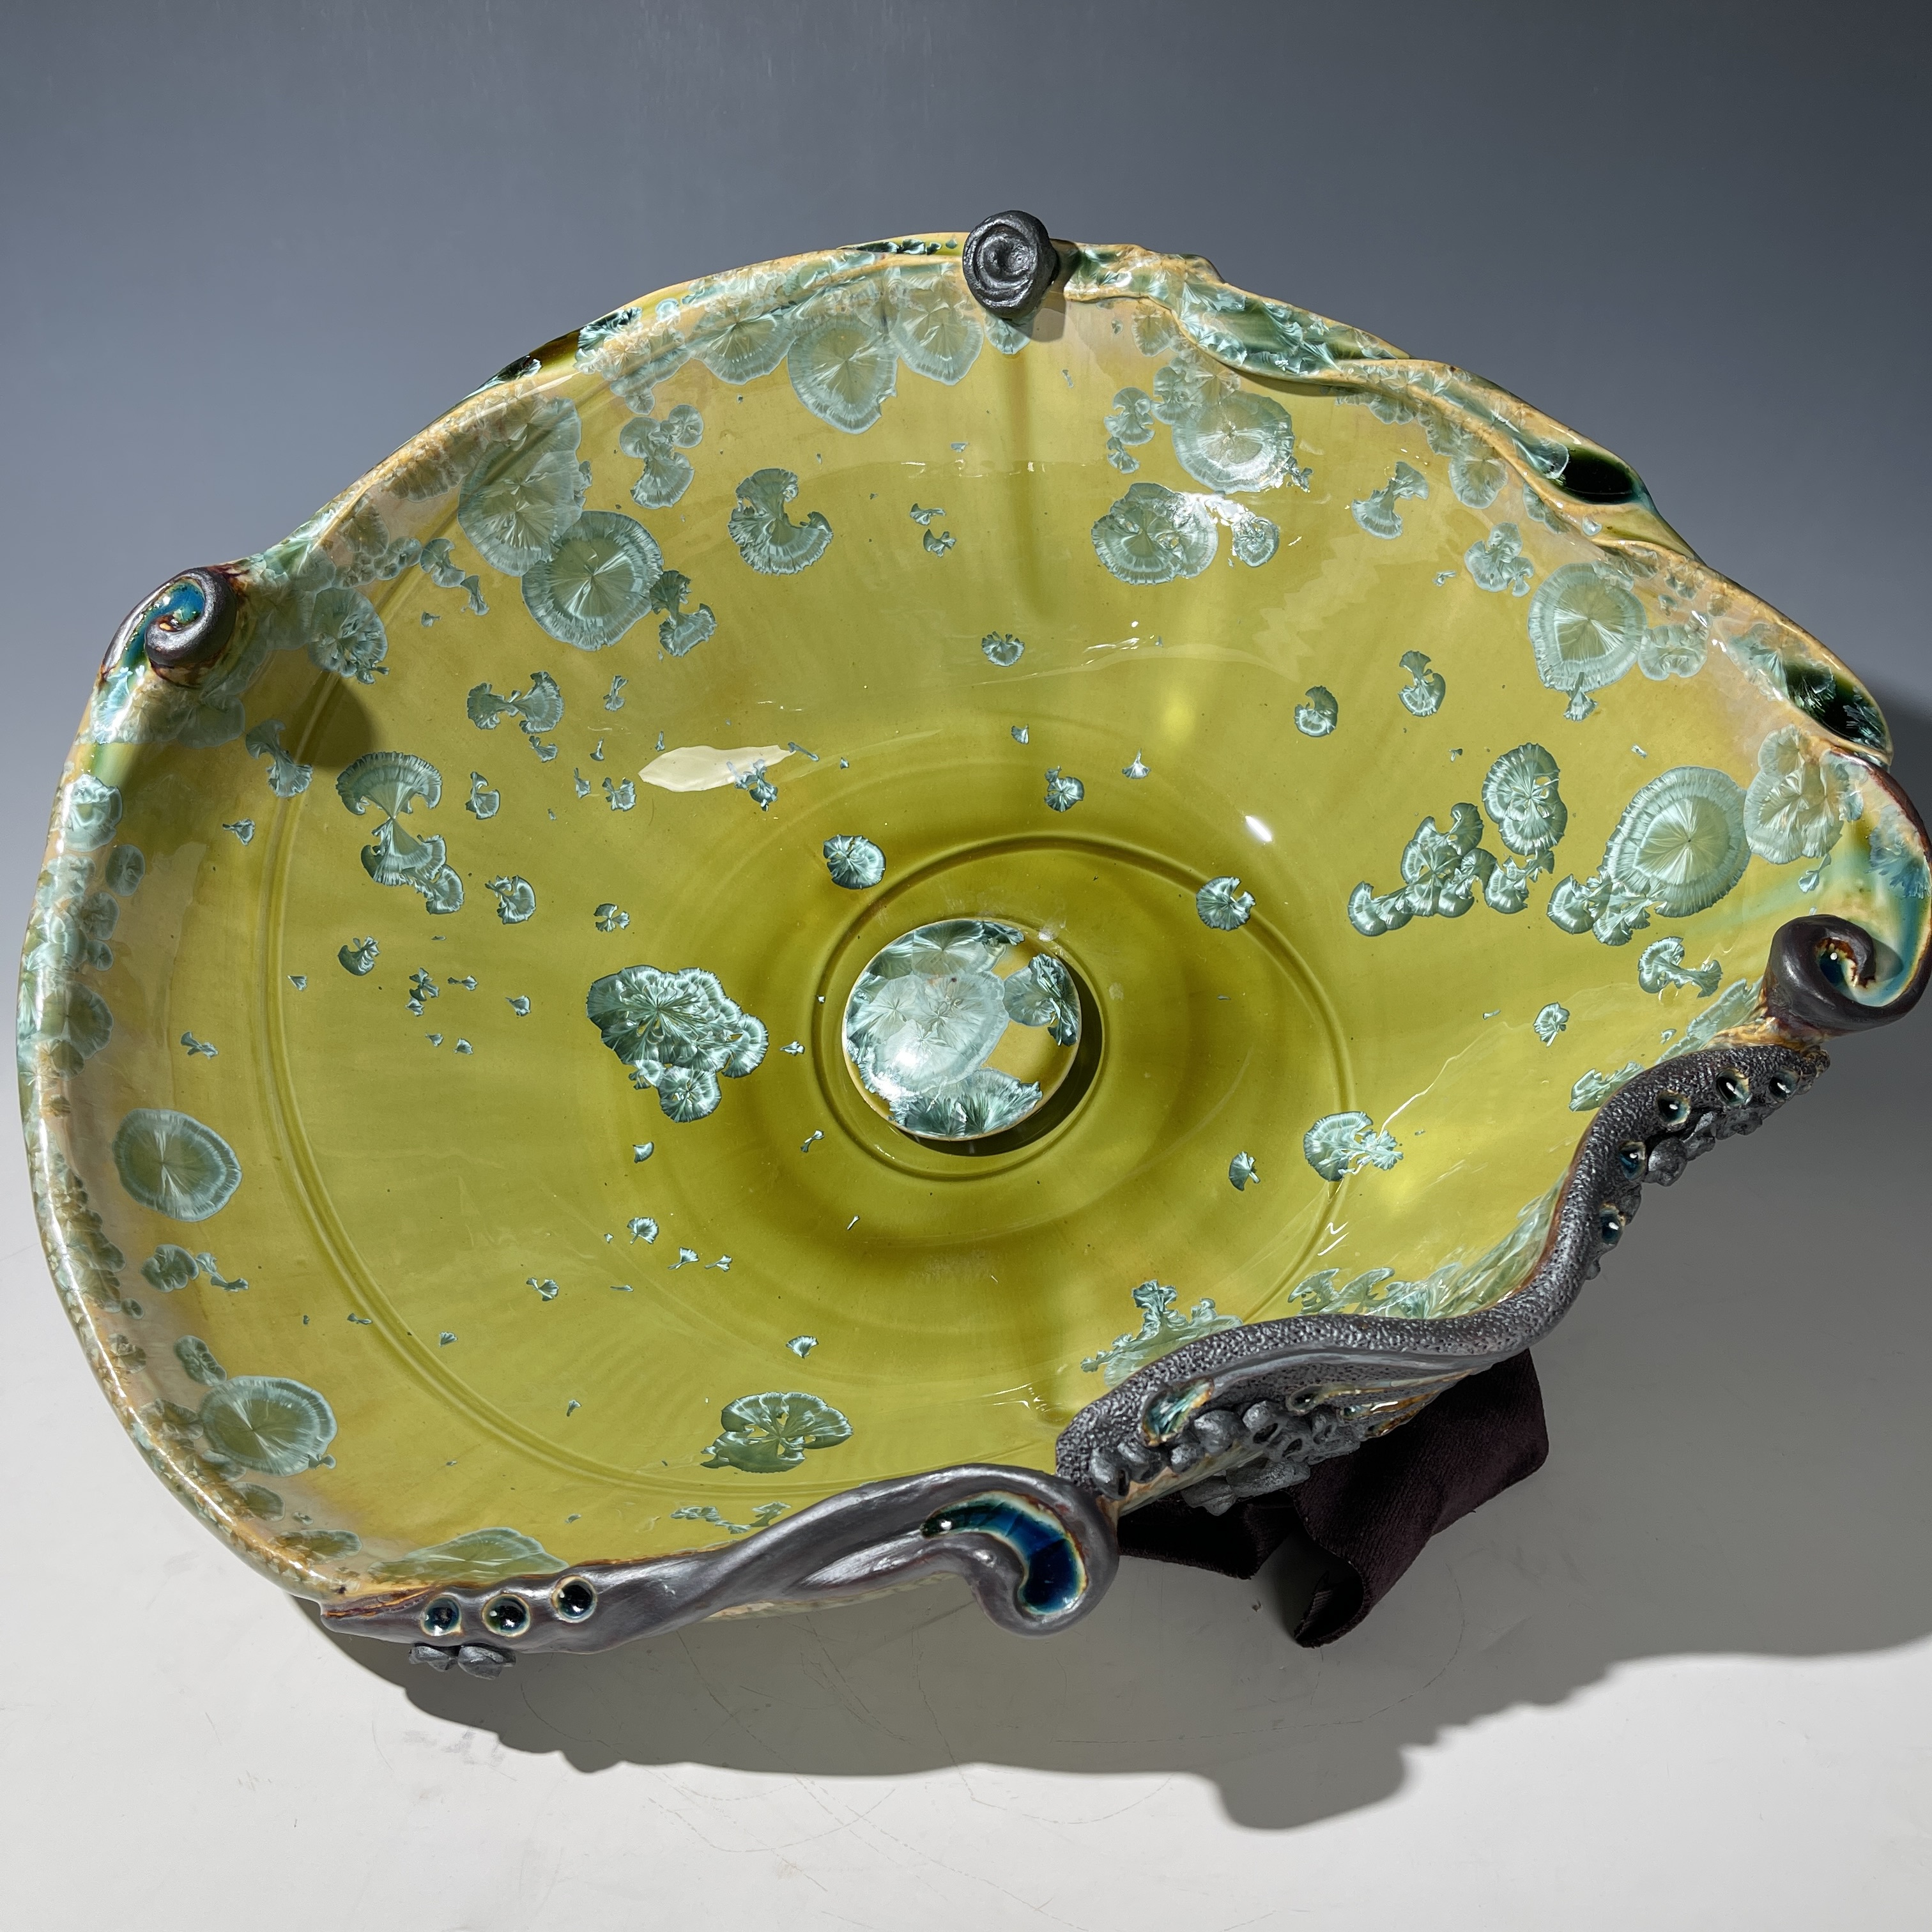 Lavabo de forme ovoïde en cristal vert avec détails sculpturaux tourbillonnants